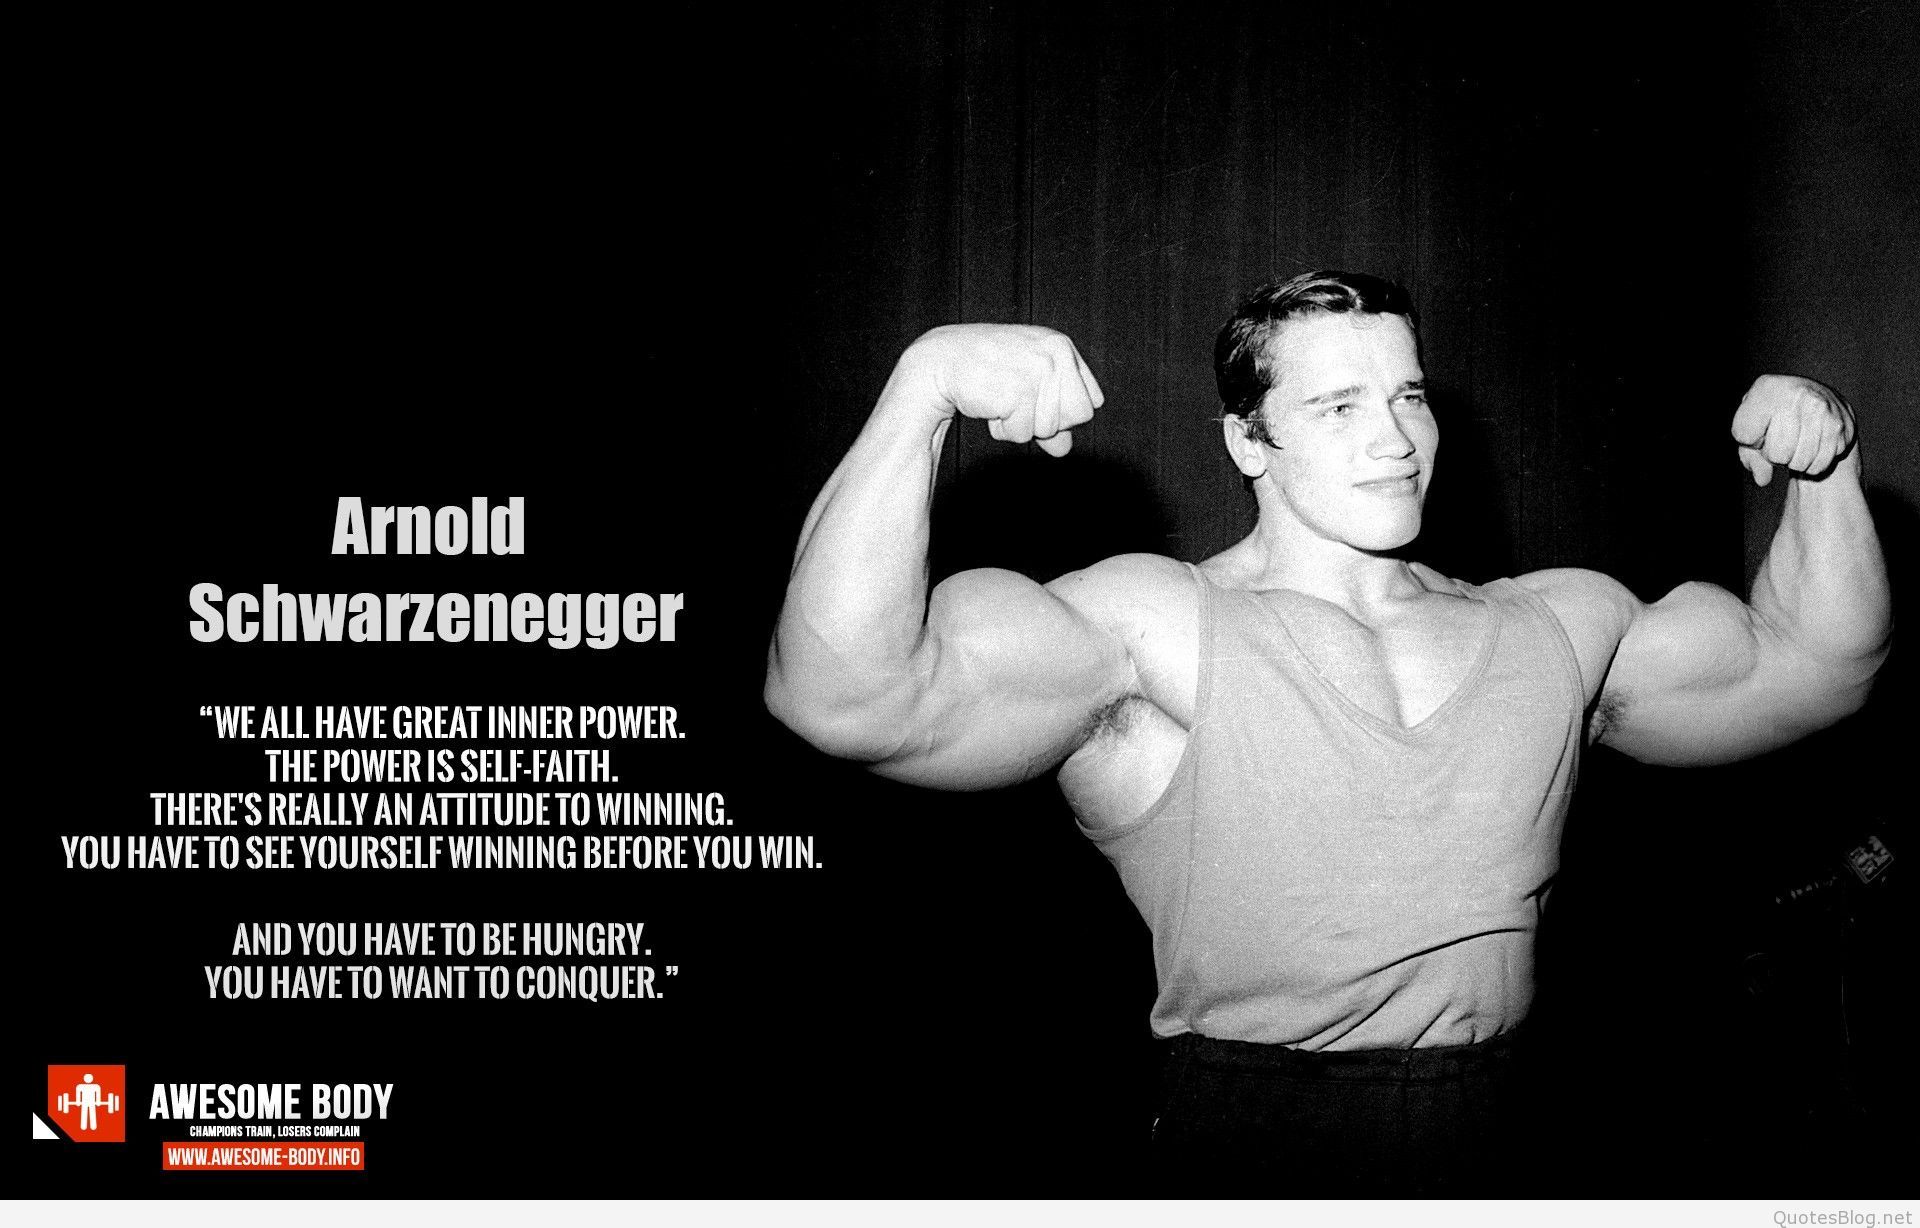 Arnold Wallpaper. Hey Arnold Wallpaper, Arnold Motivation Wallpaper and Halloween Hey Arnold Wallpaper